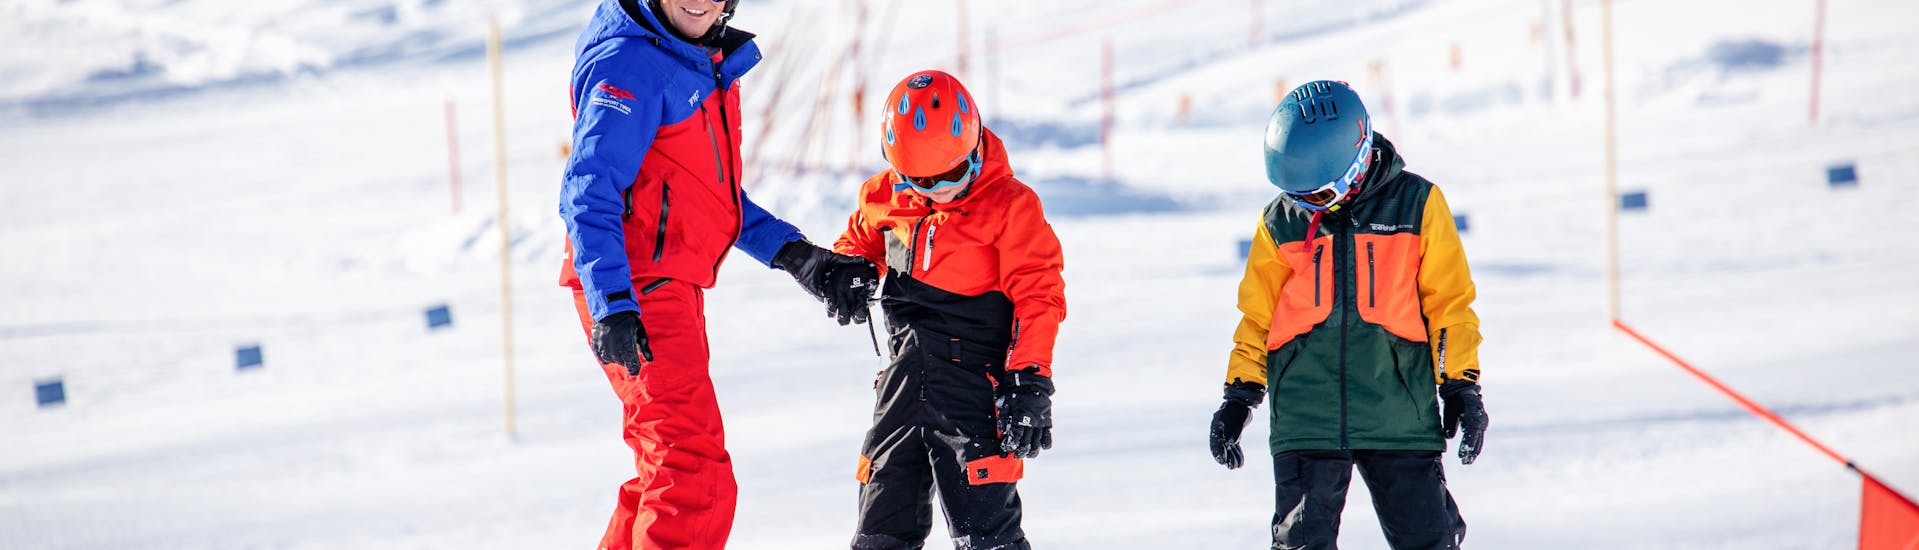 Snowboarfahrer springt auf Piste im Snowboardkurs für Kinder & Erwachsene - Fortgeschritten.